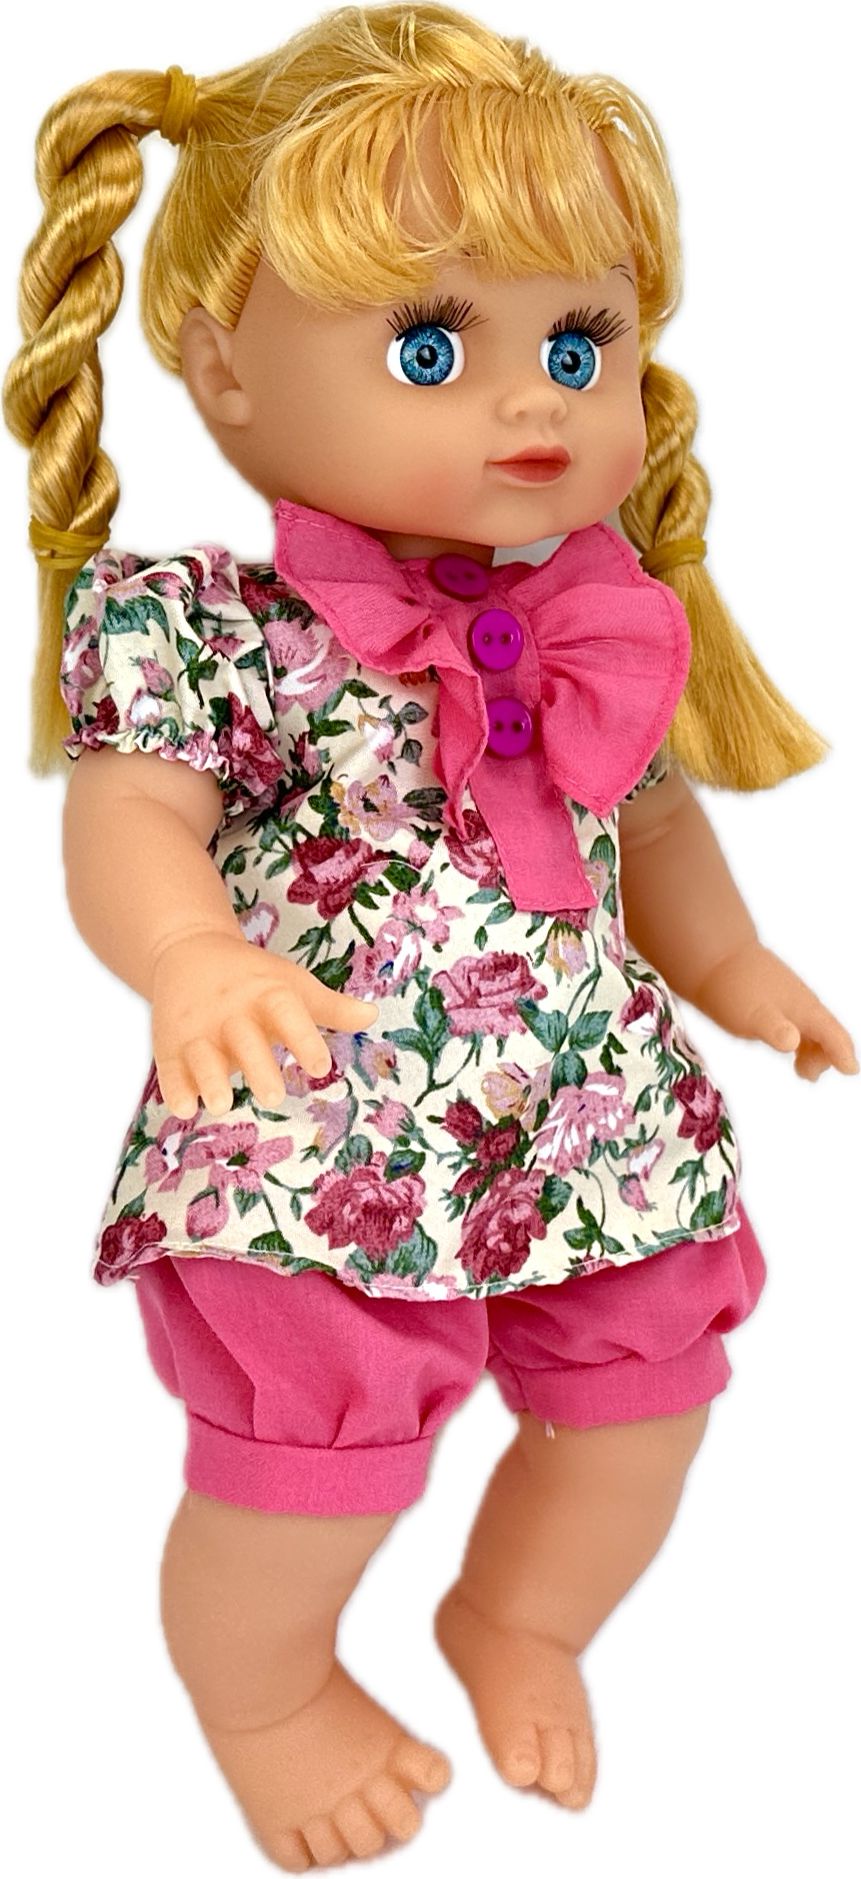 Интерактивная кукла Play Smart Алина, говорит, поет песню про маму, в сумочке, 33 см кукла милана 18 весна говорит фразы высота 70 см кукла как в детстве кукла с длинны